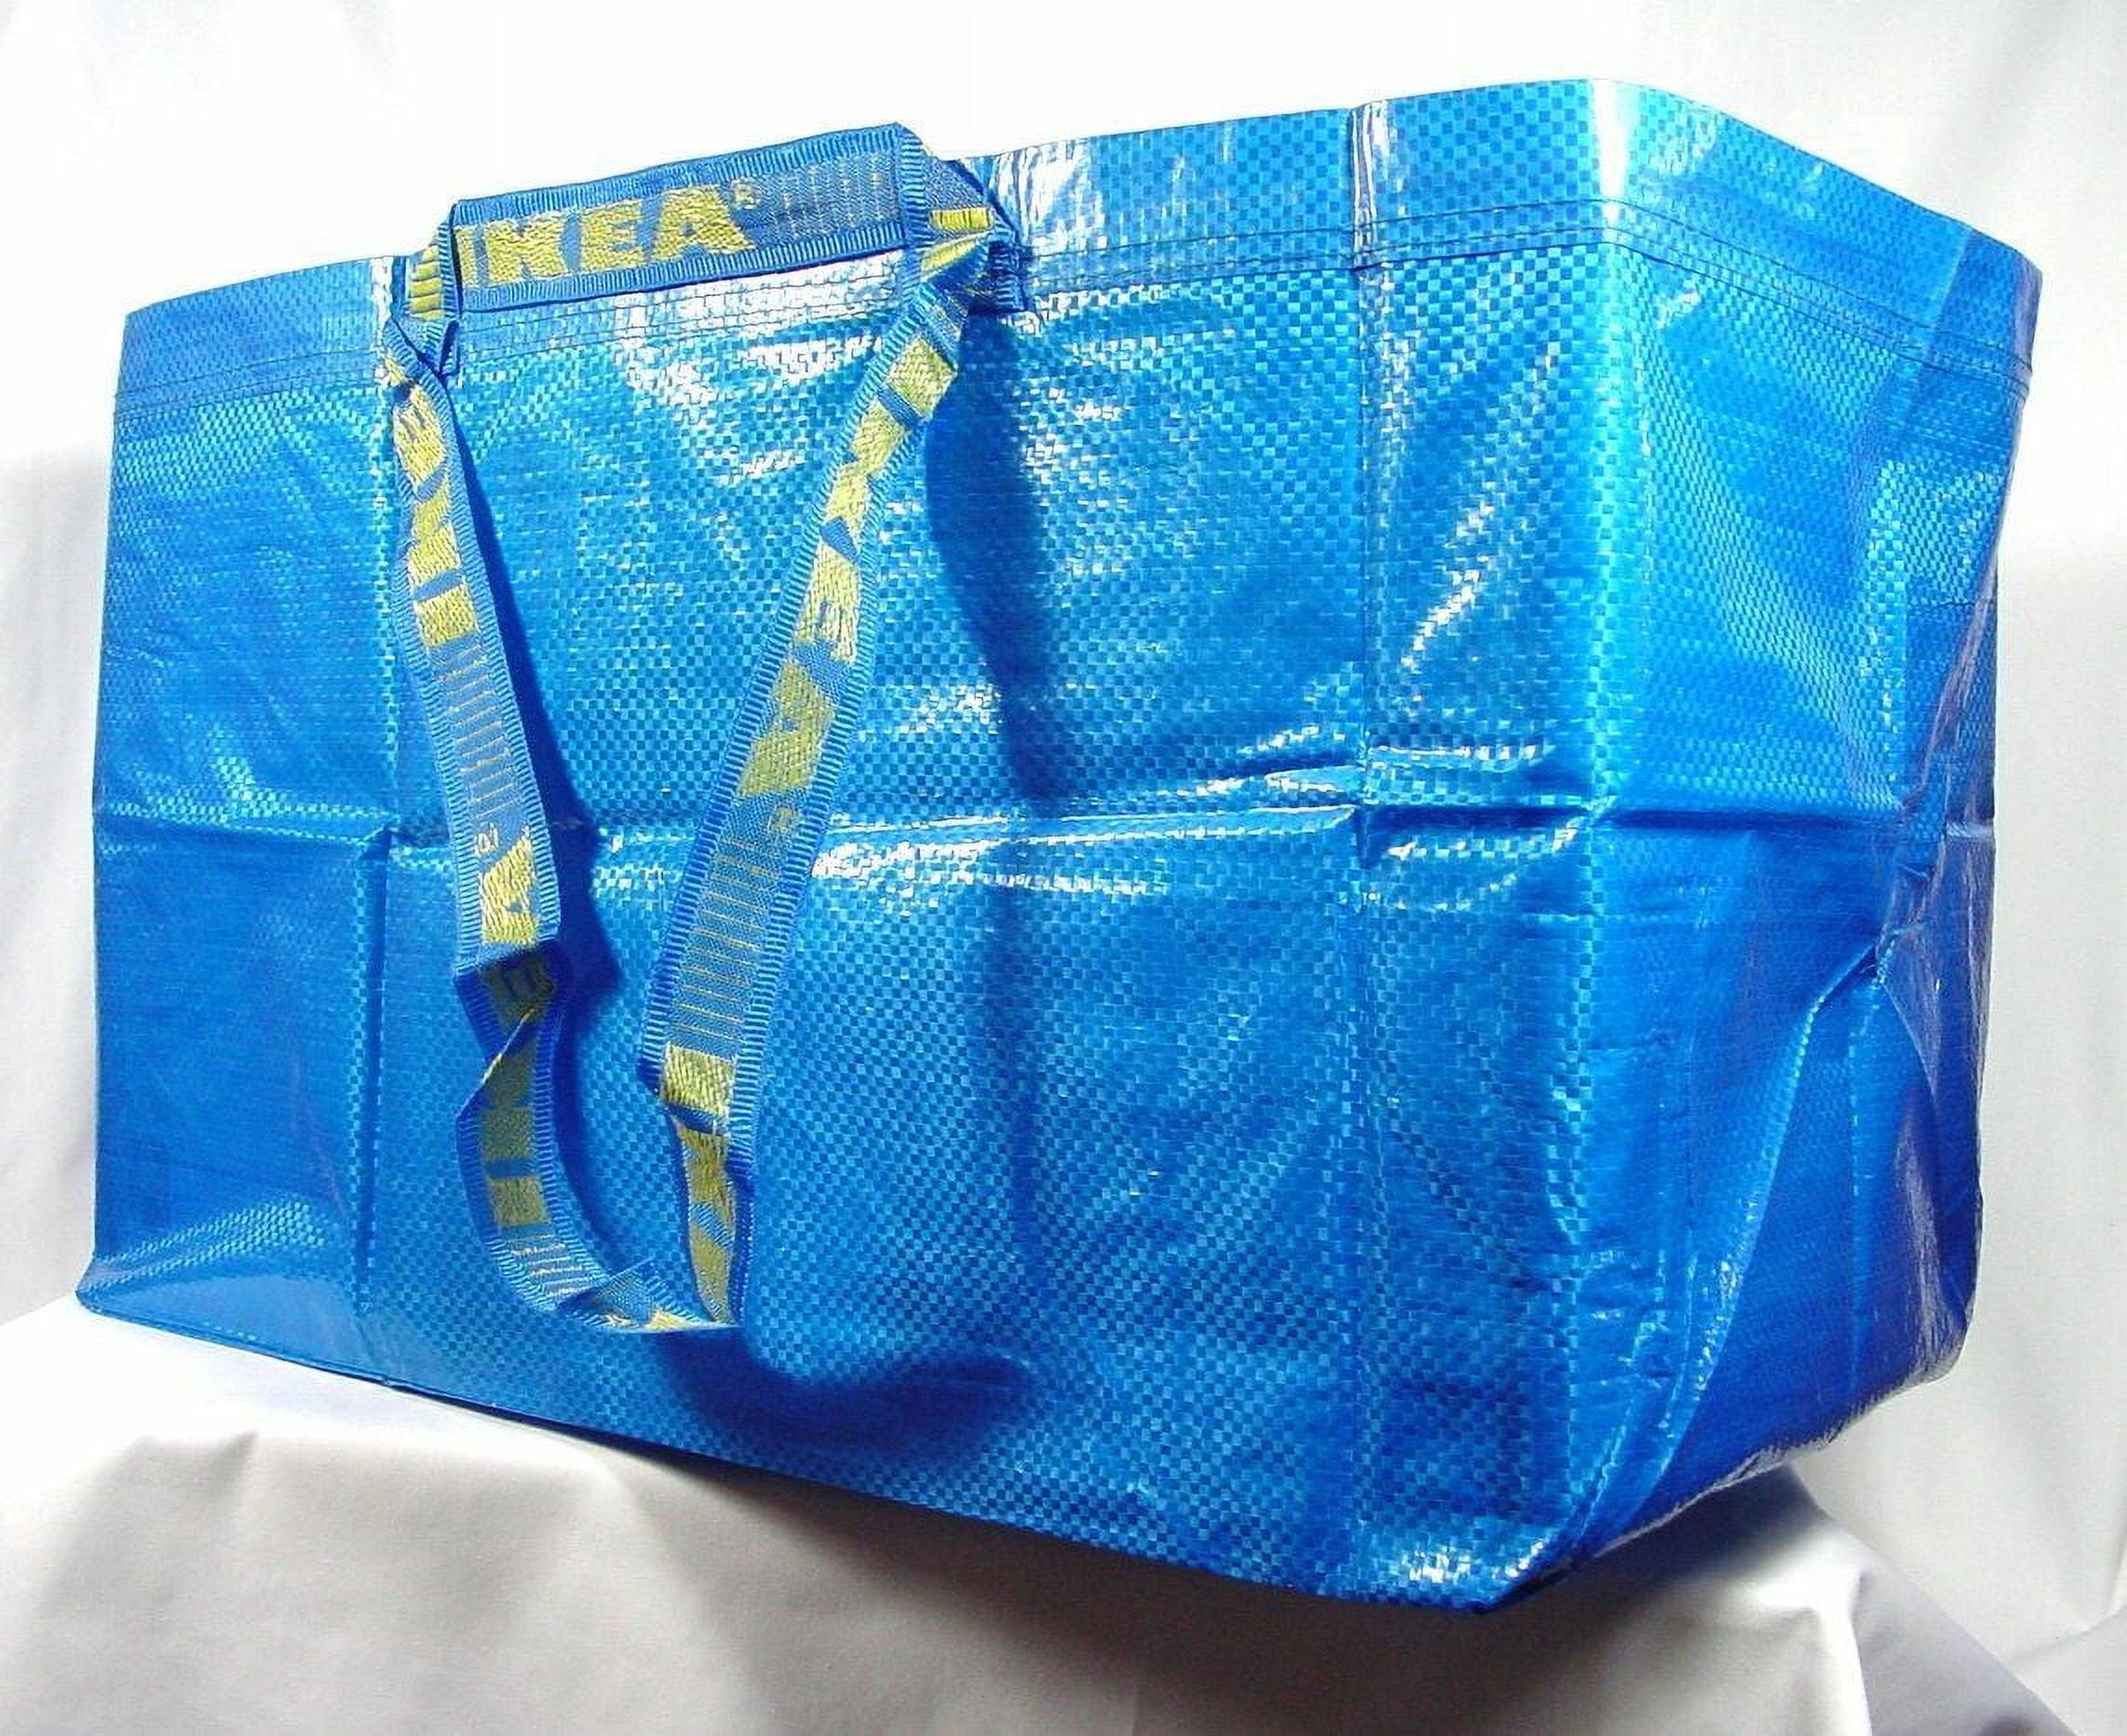 FRAKTA Cooler bag, blue - IKEA